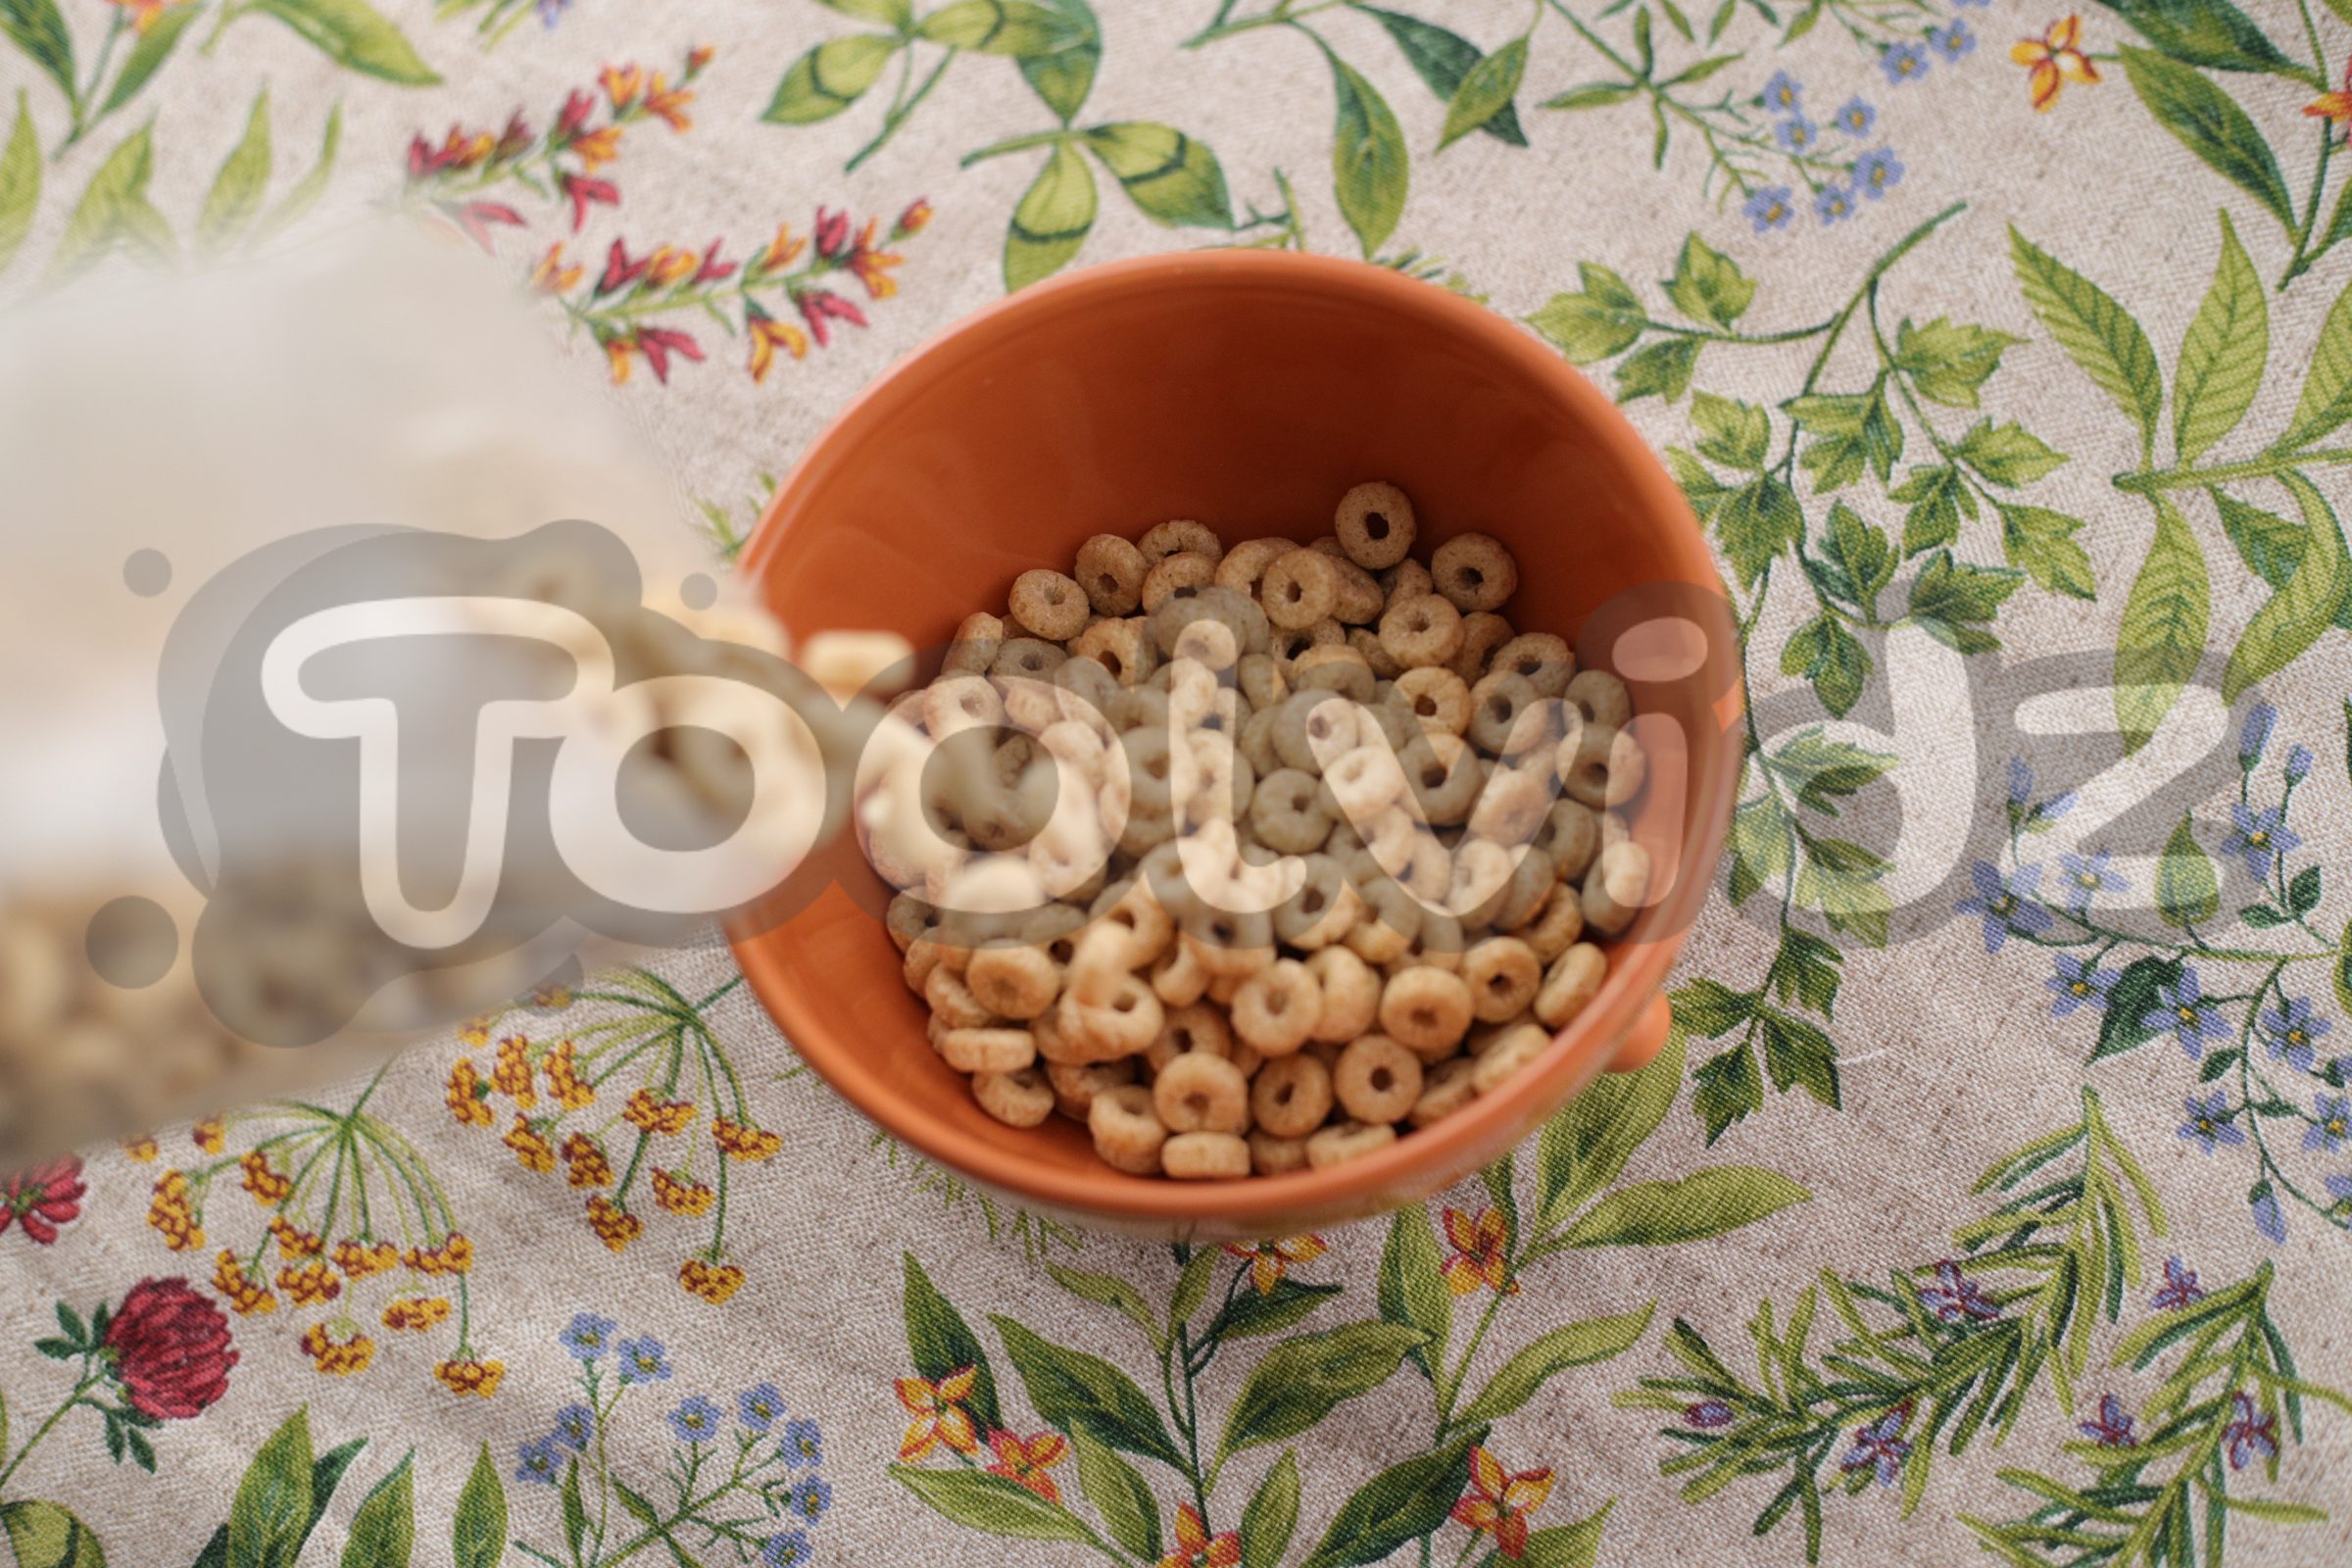 Una tazza vista dall'alto, poggiata su una tovaglia floreale, si sta riempiendo ancor di più di cereali